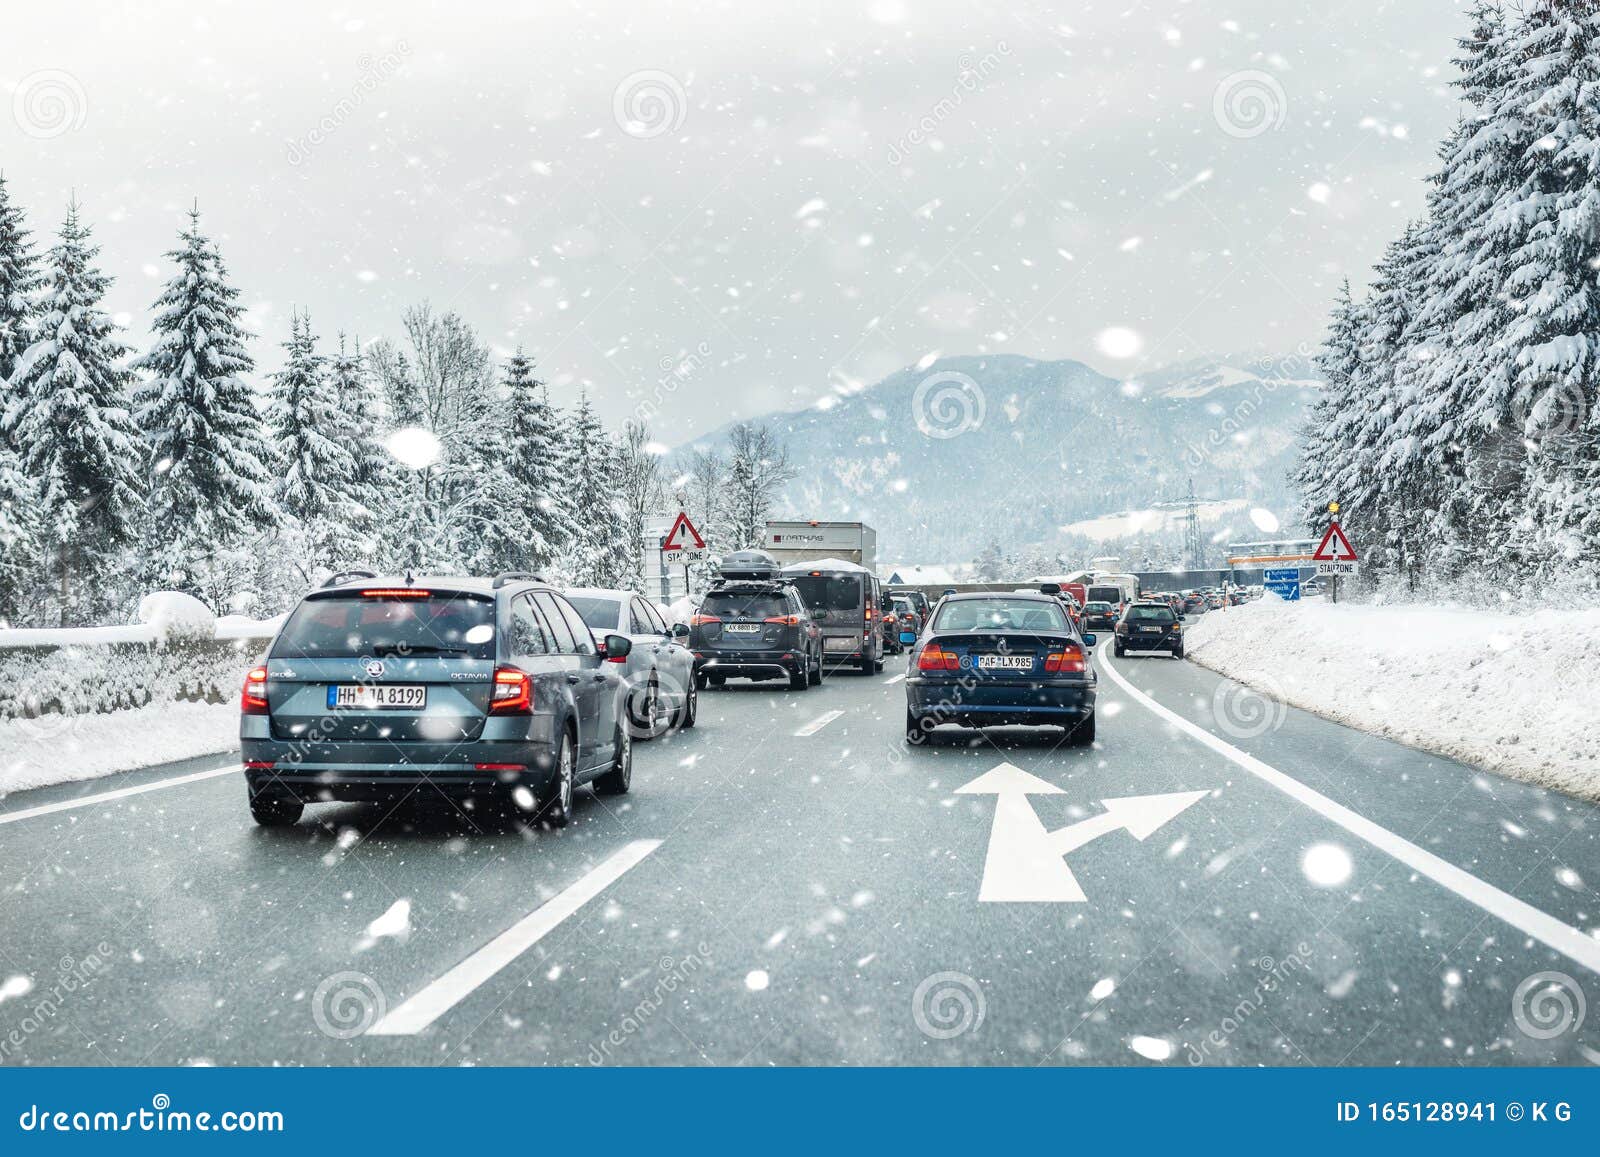 12 januari 2019 - Salzburg, Österrike: Höghastighetsväg med många olika bilar i trafikstockningar på grund av dålig trafik. 12 januari 2019 - Salzburg, Österrike: Vinterväg med många olika bilar i trafikstockningar på grund av dåliga väderförhållanden Fordon på tunga snöstormar och blåsor på kalla vinterdagen